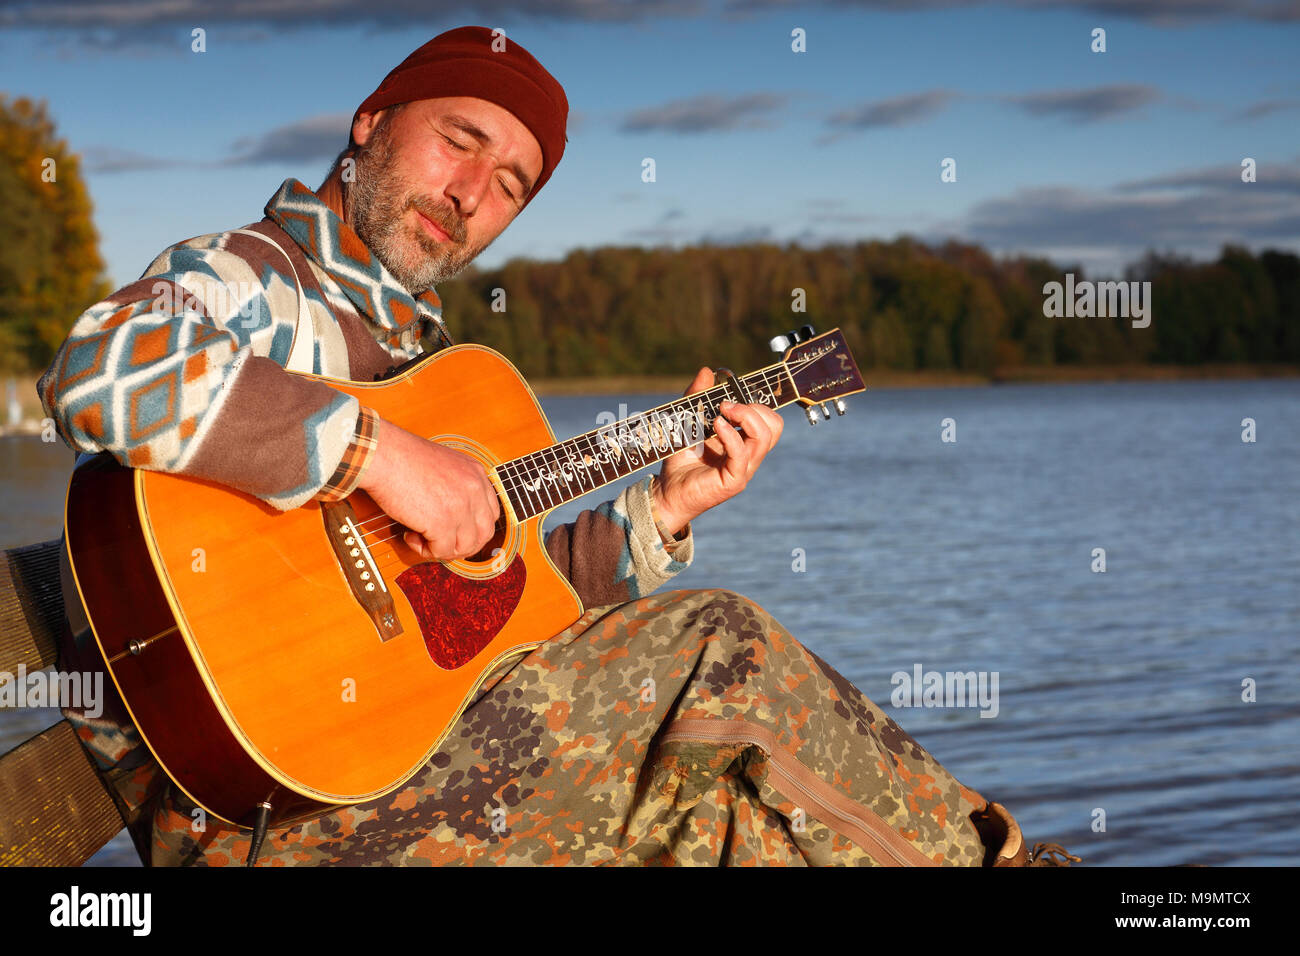 El hombre toca la guitarra en una lancha de desembarco en la orilla del lago, Mecklenburg Lake District, el Estado federado de Mecklemburgo-Pomerania Occidental, Alemania Foto de stock